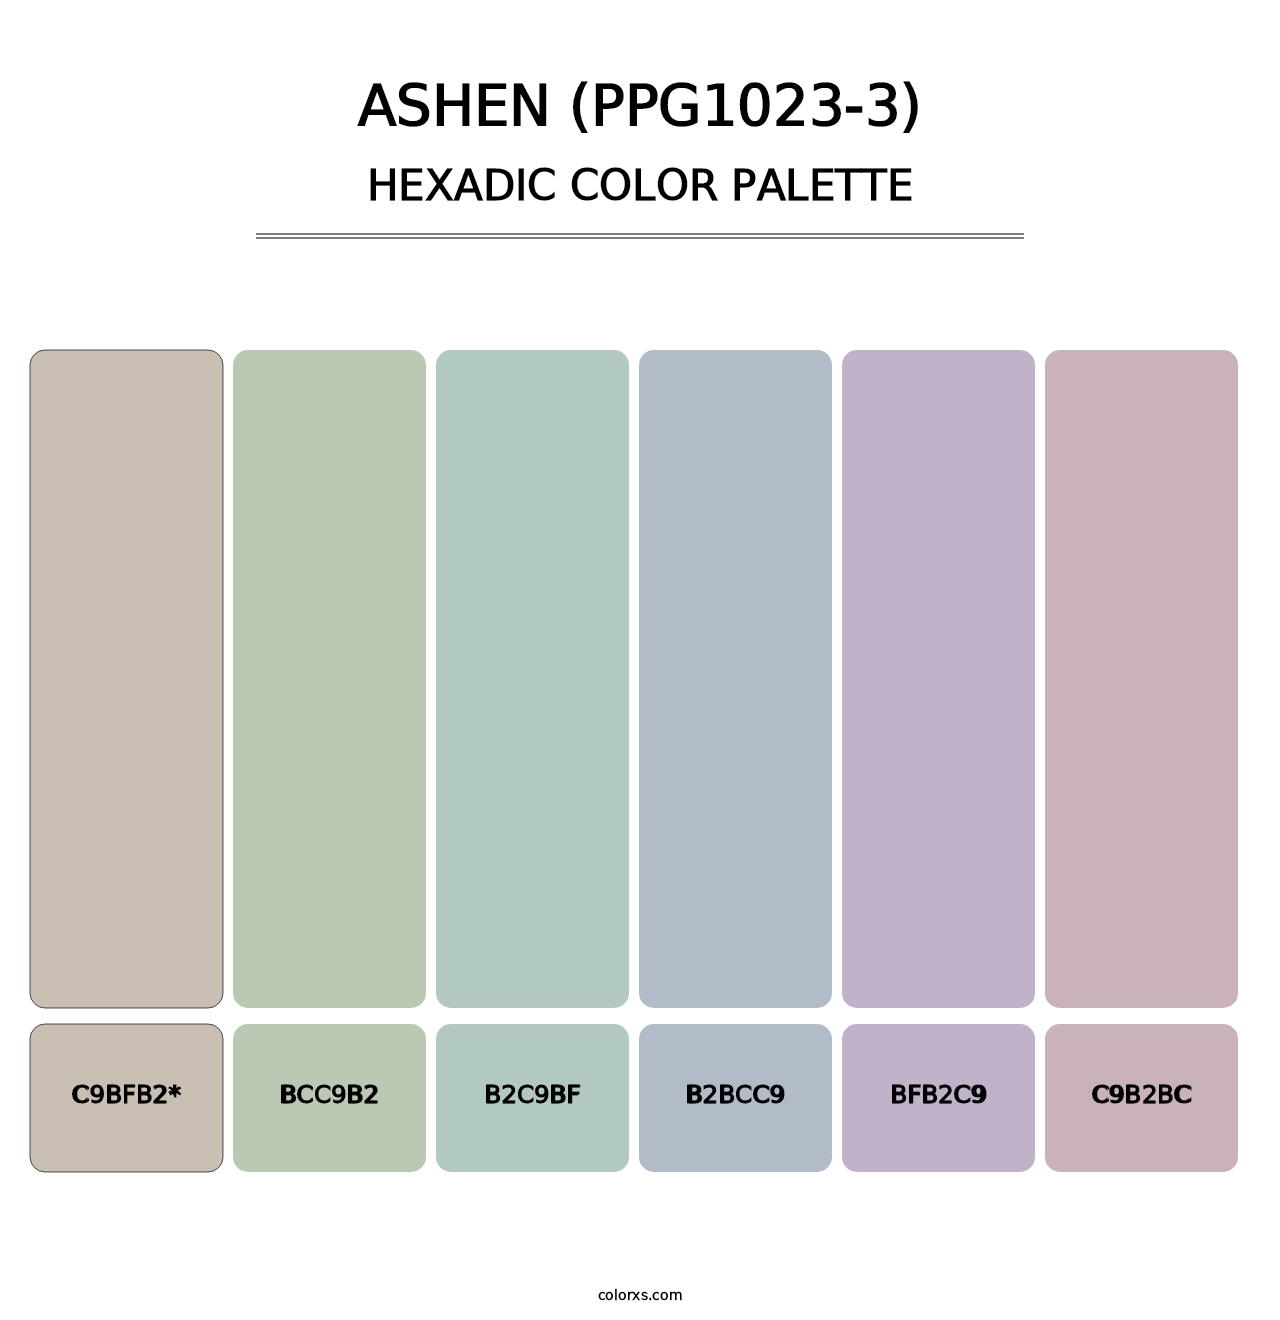 Ashen (PPG1023-3) - Hexadic Color Palette